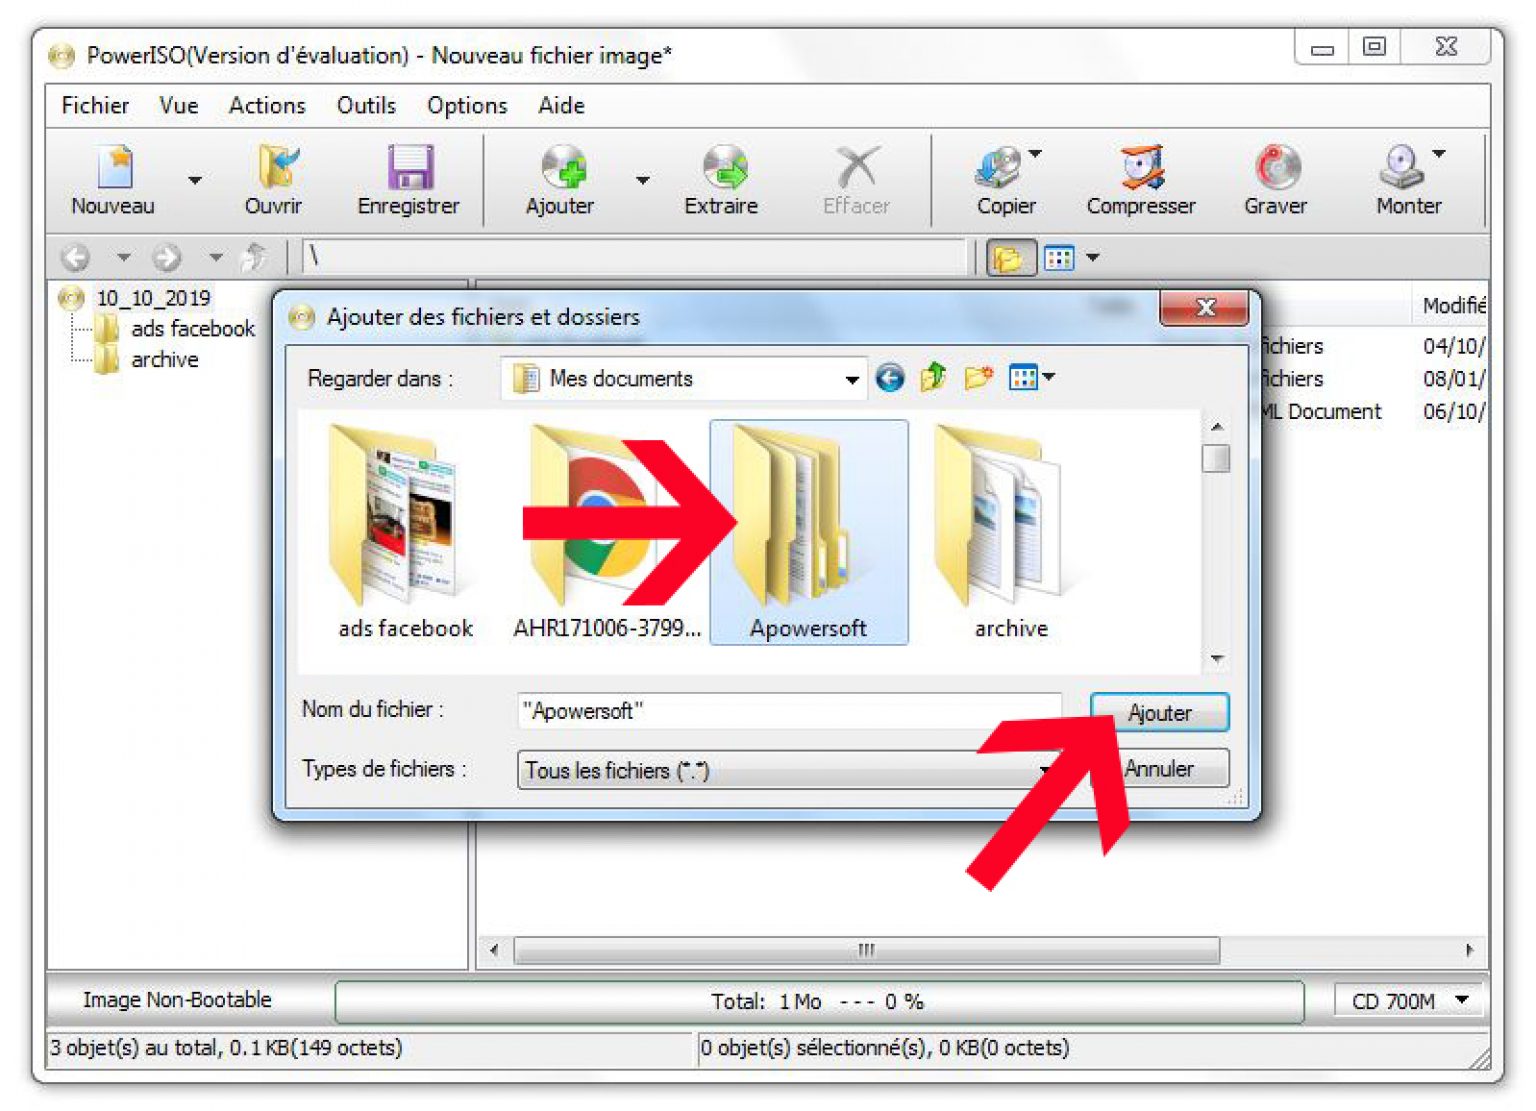 Comment créer un fichier image ISO à partir d’un CD/DVD ou dossiers